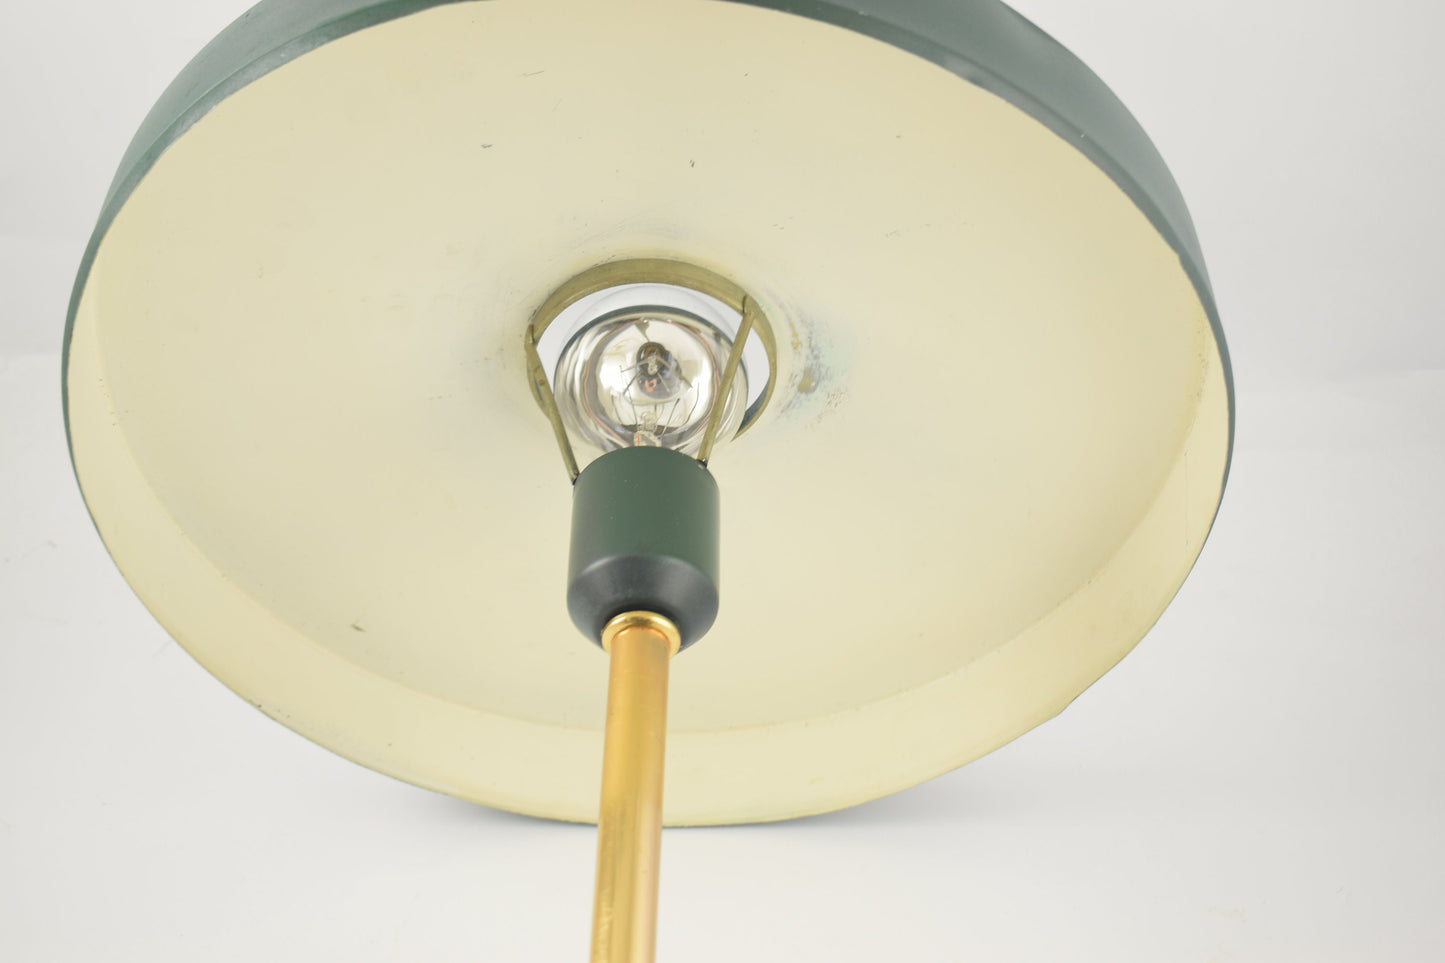 Philips mid century modern kallf timor table lamp, great design dark green olive desk lamp